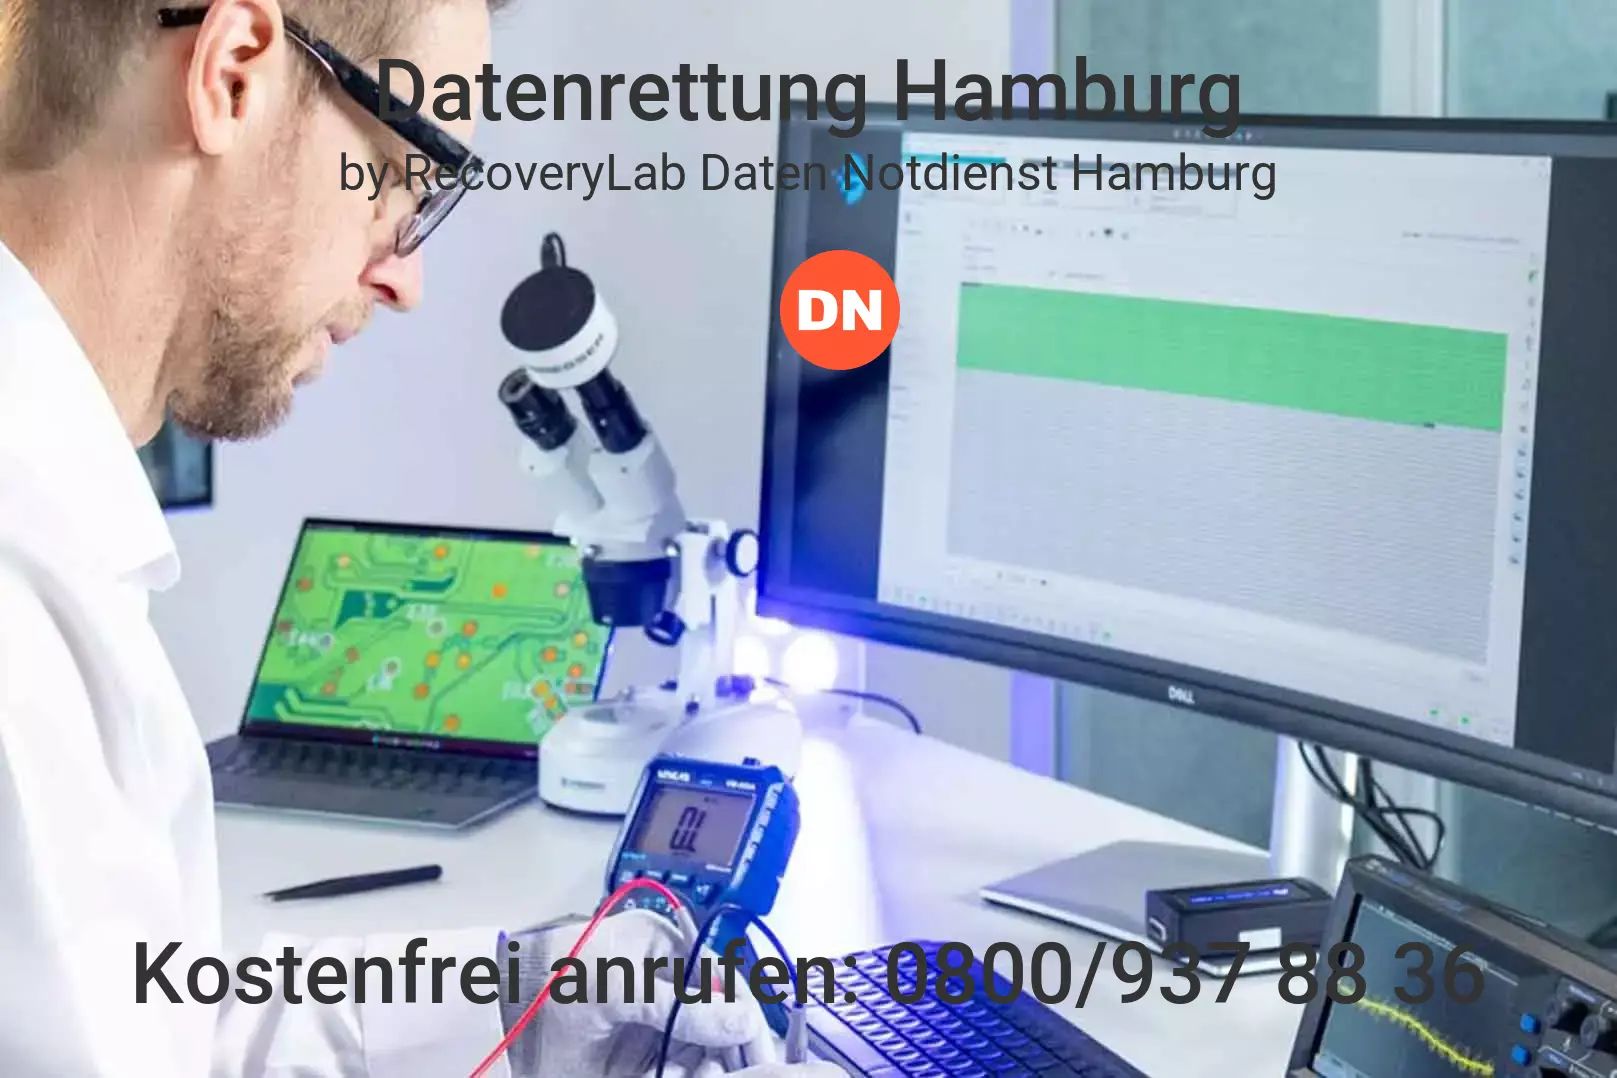 Fallstudie zu erfolgreicher Datenrettung virtuelle Maschine Hamburg